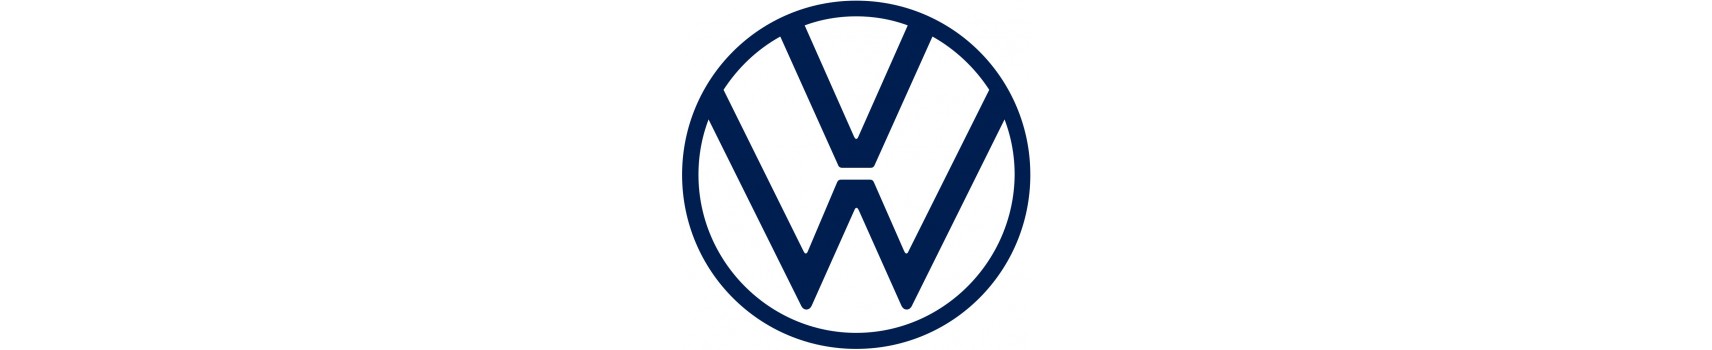 VW offroad akcesoria, wyprawa offroad akcesoria do VW